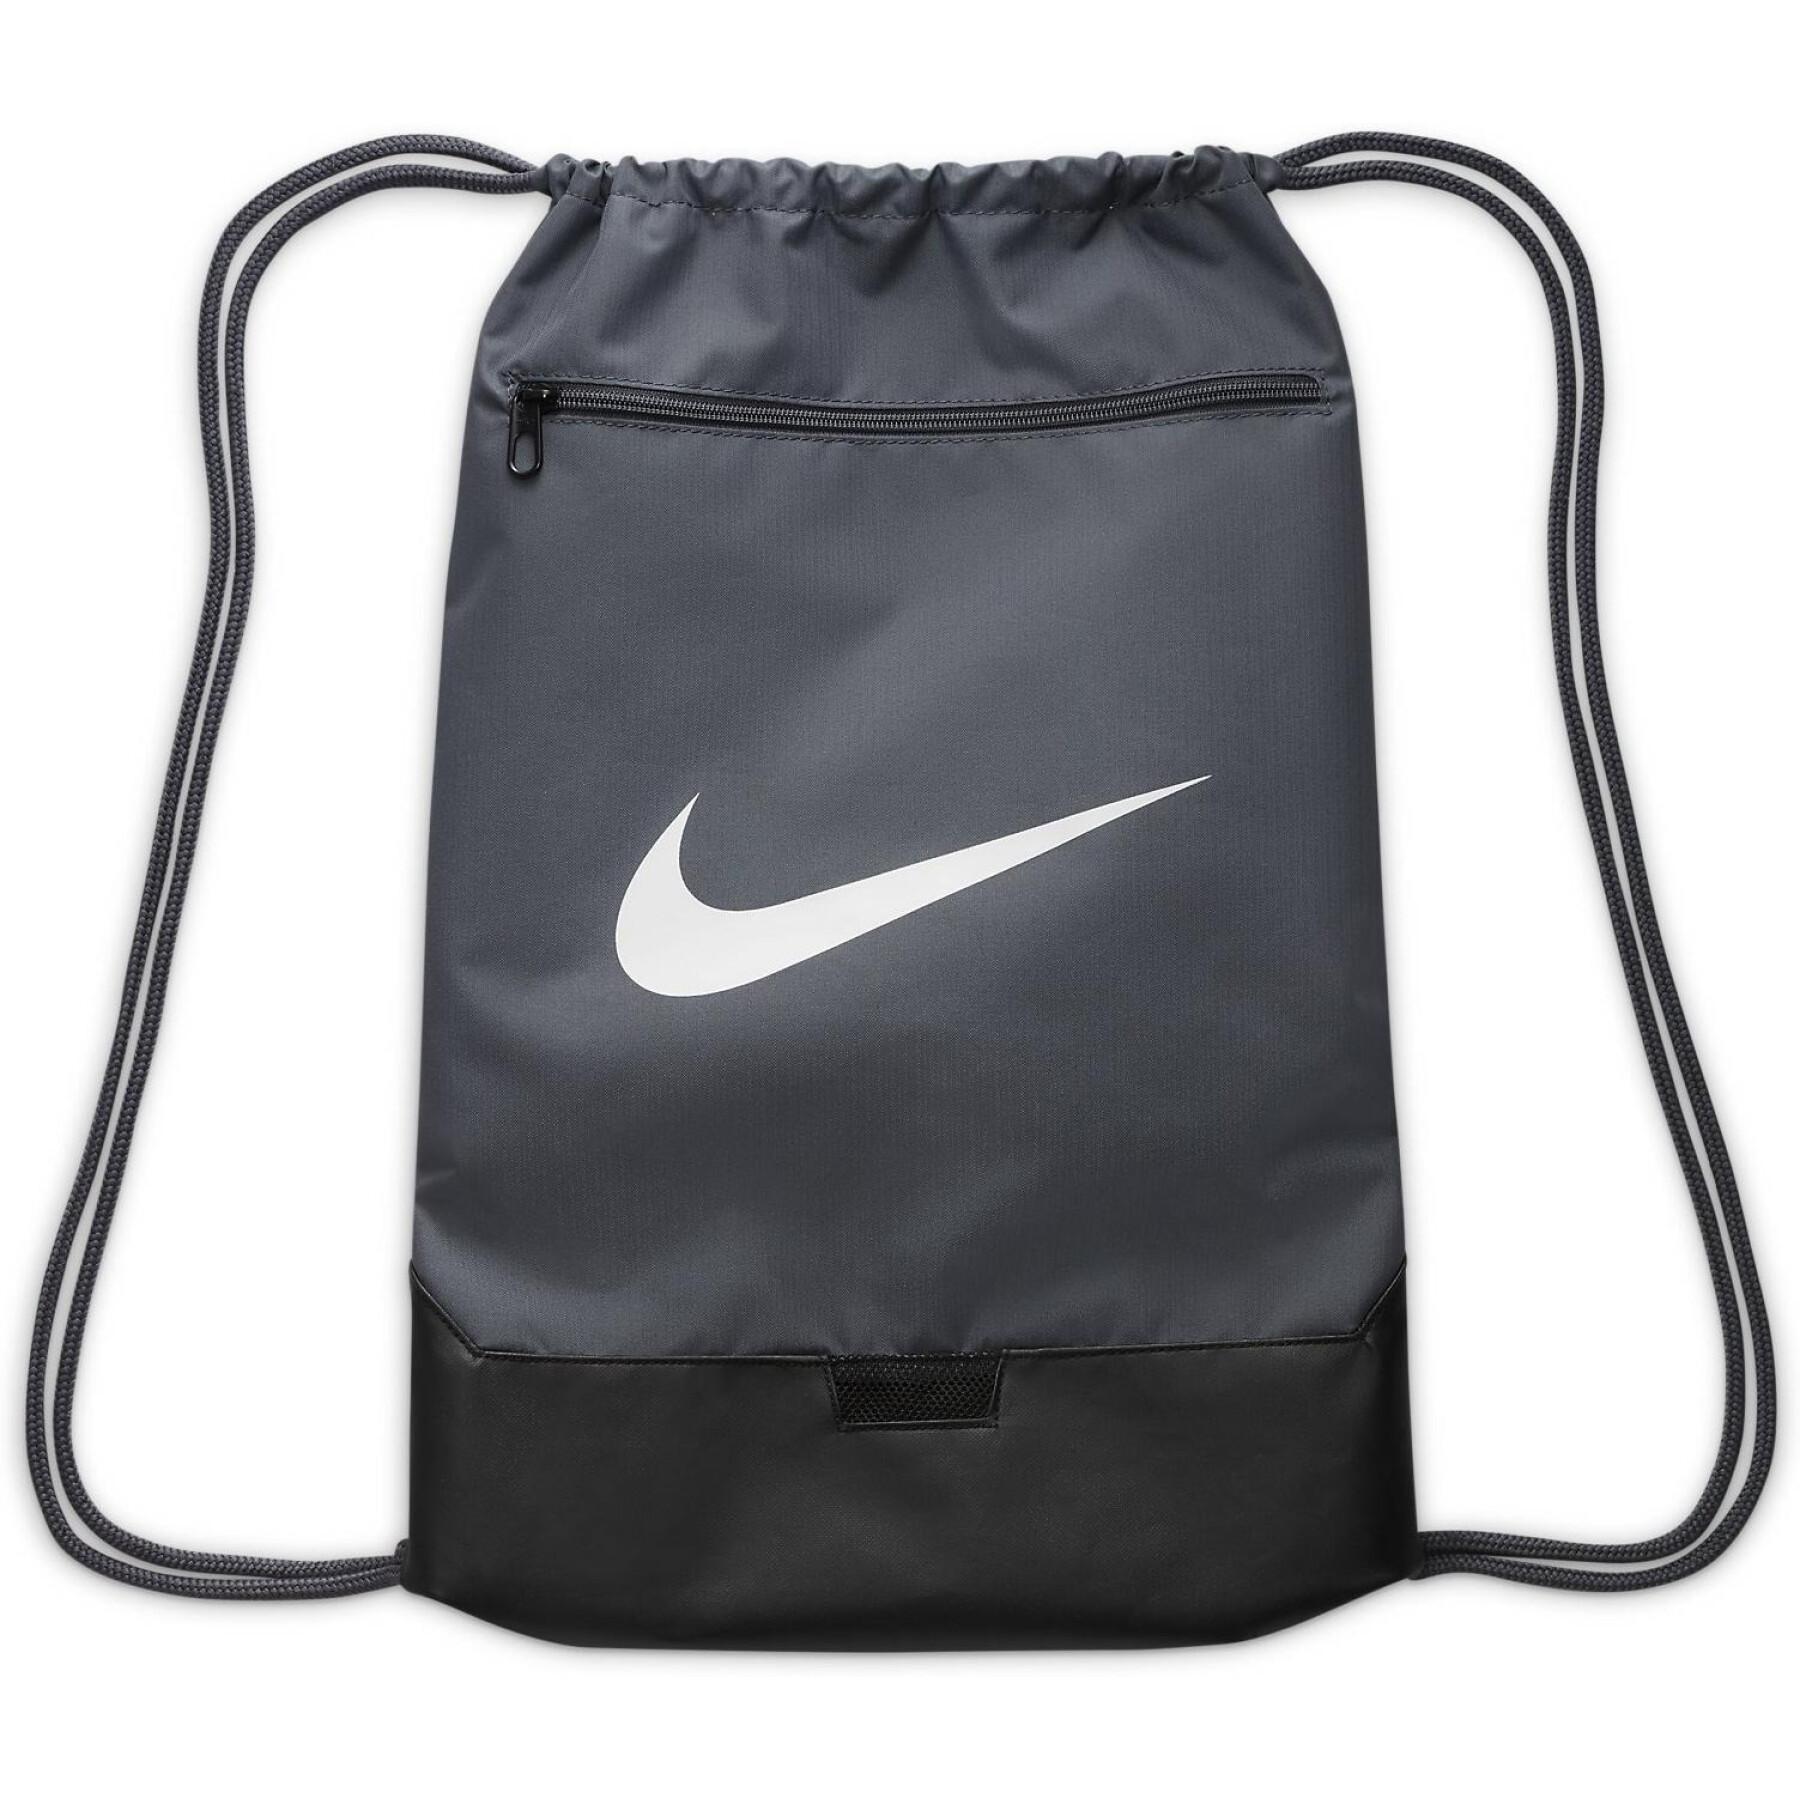 Bolsa de Nike 9.5 - Bolsas - Mochilas - Equipaciones